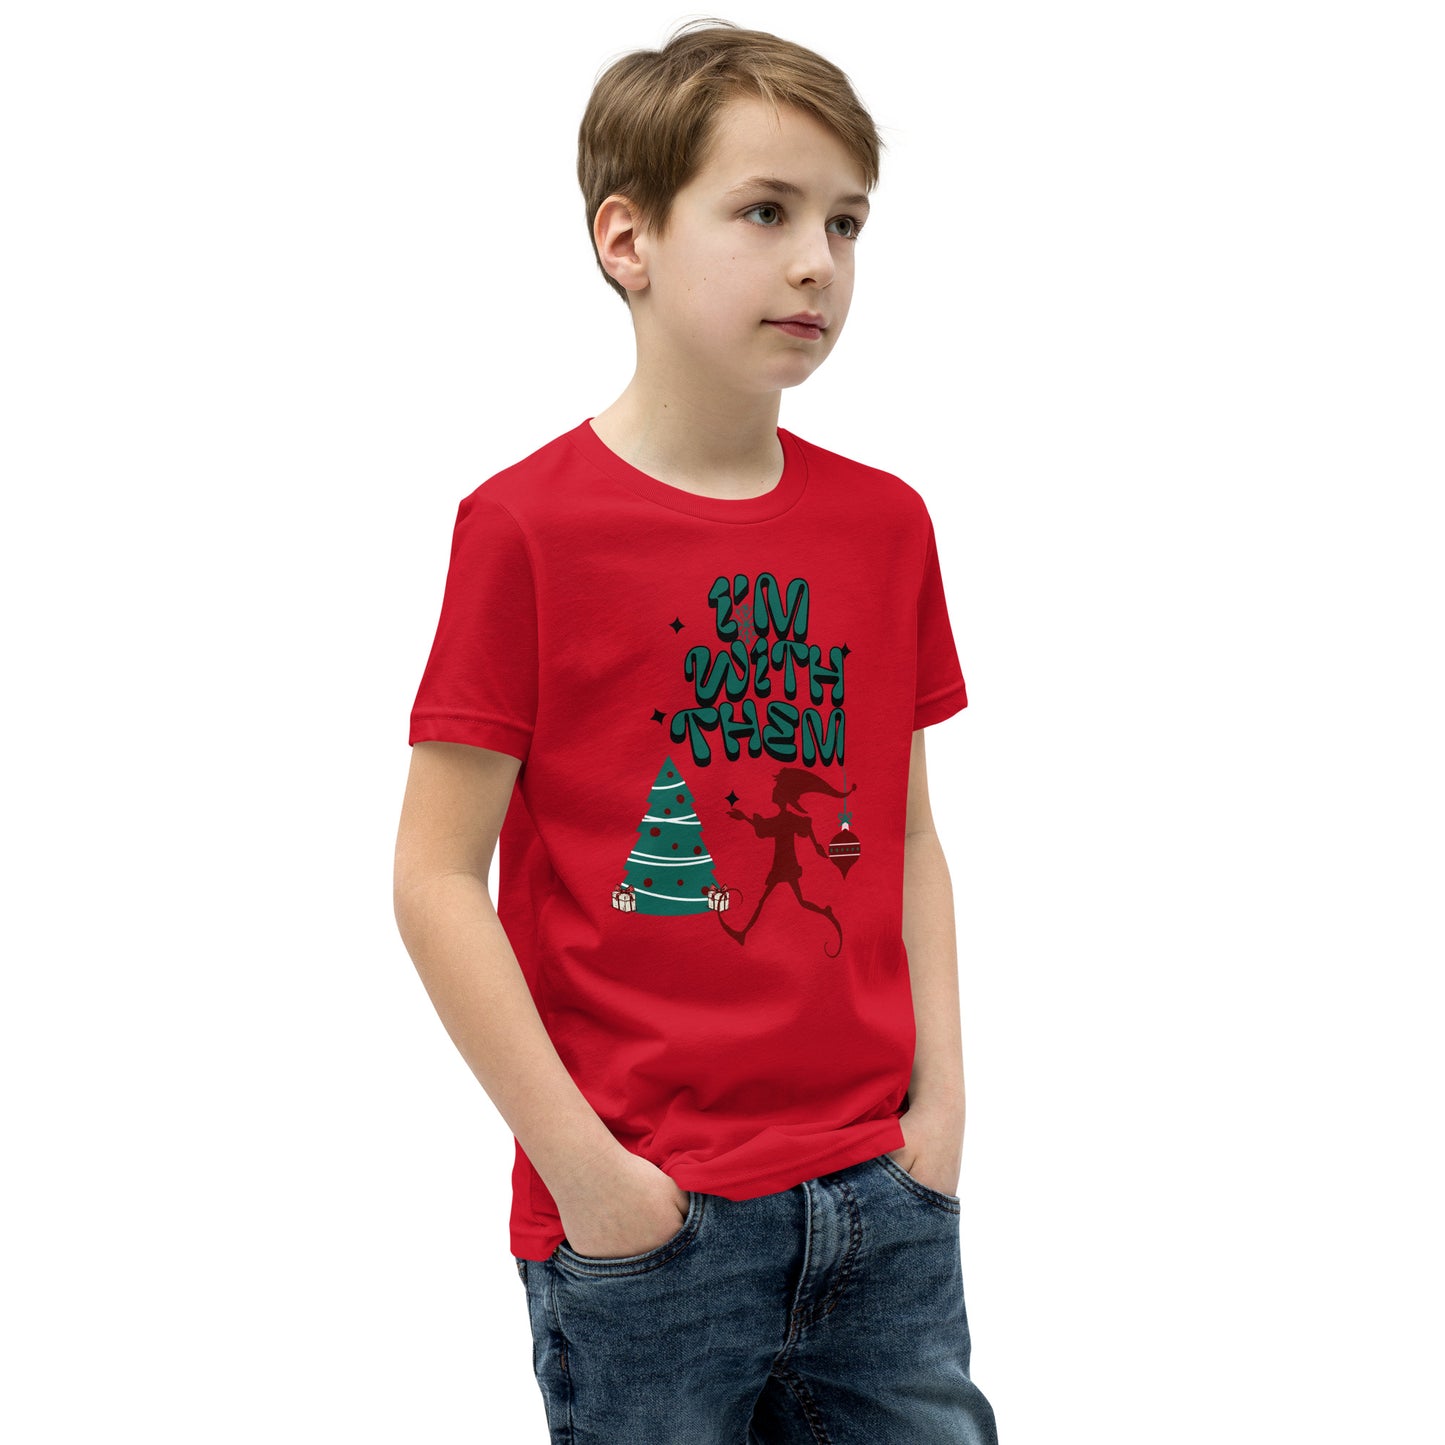 Camiseta de Navidad para jóvenes: ¡ESTOY CON ELLOS!